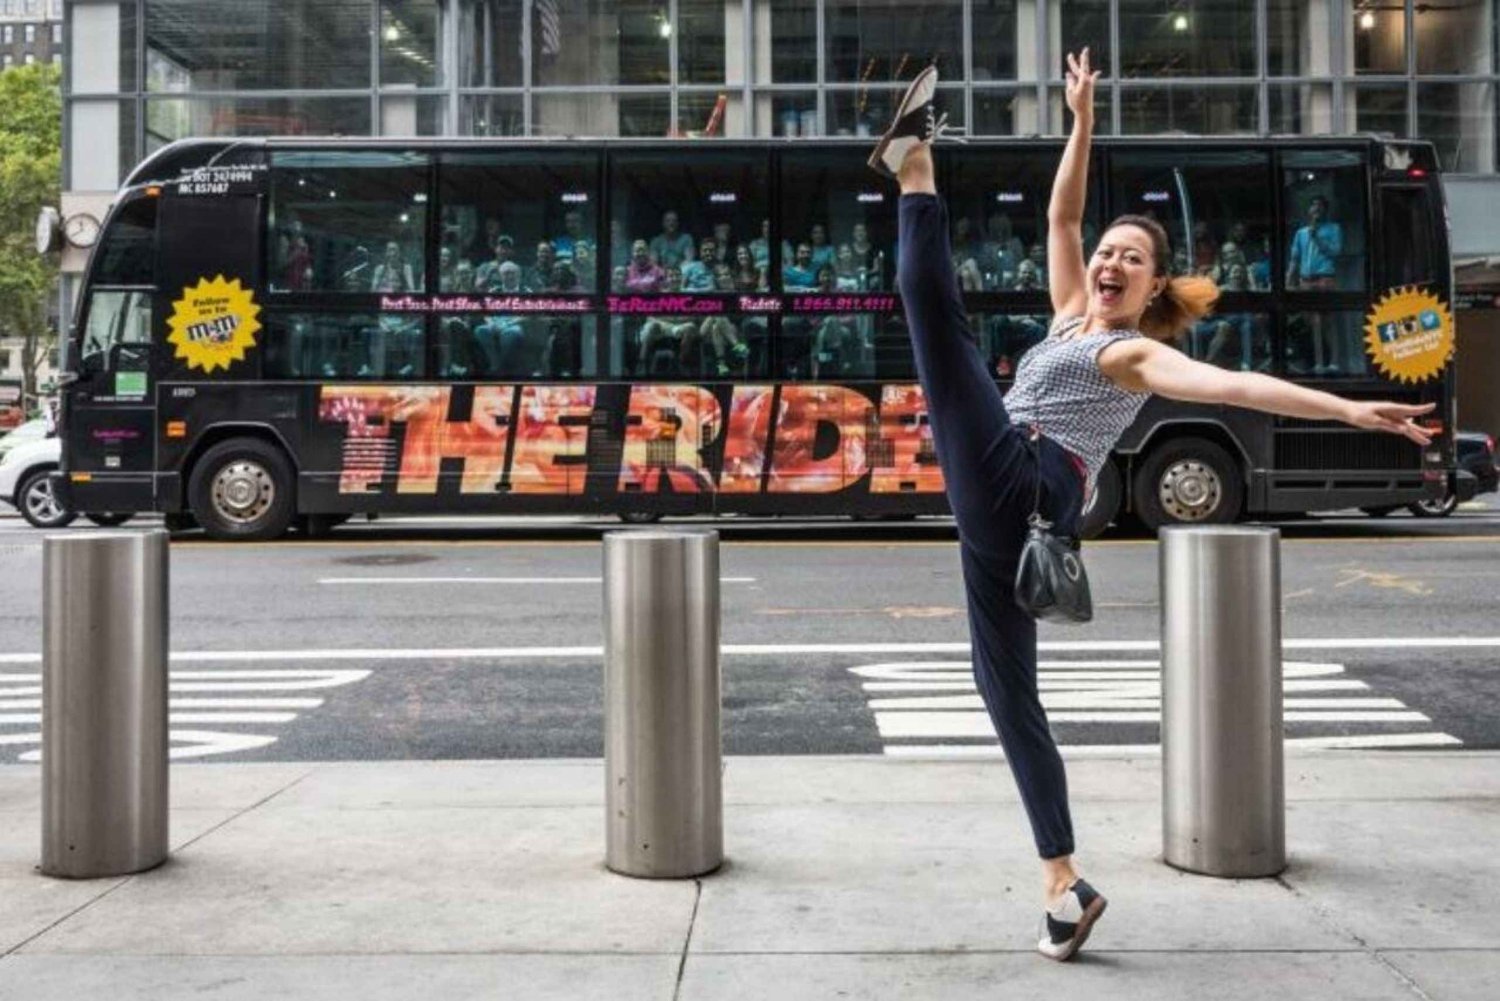 NYC: The Ride Theatre Bus & Best of Manhattan Wycieczka piesza